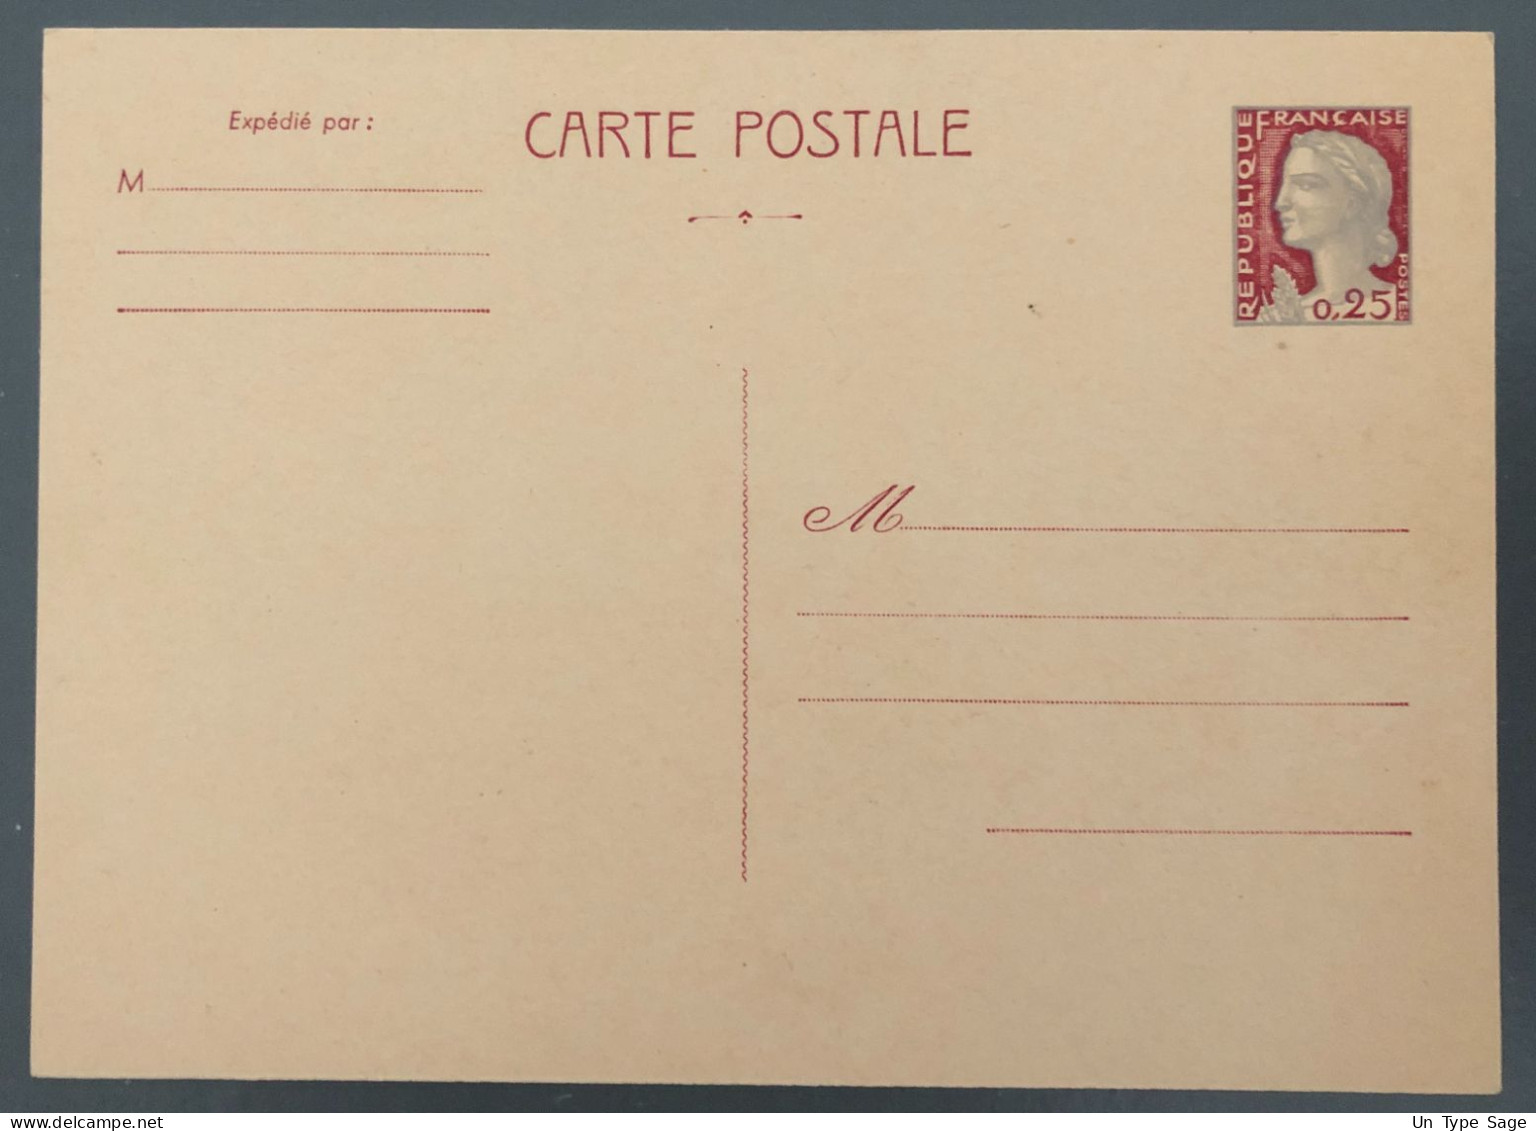 France Entier Type Marianne 25c. - Carte Postale - (B1973) - Bandes Pour Journaux